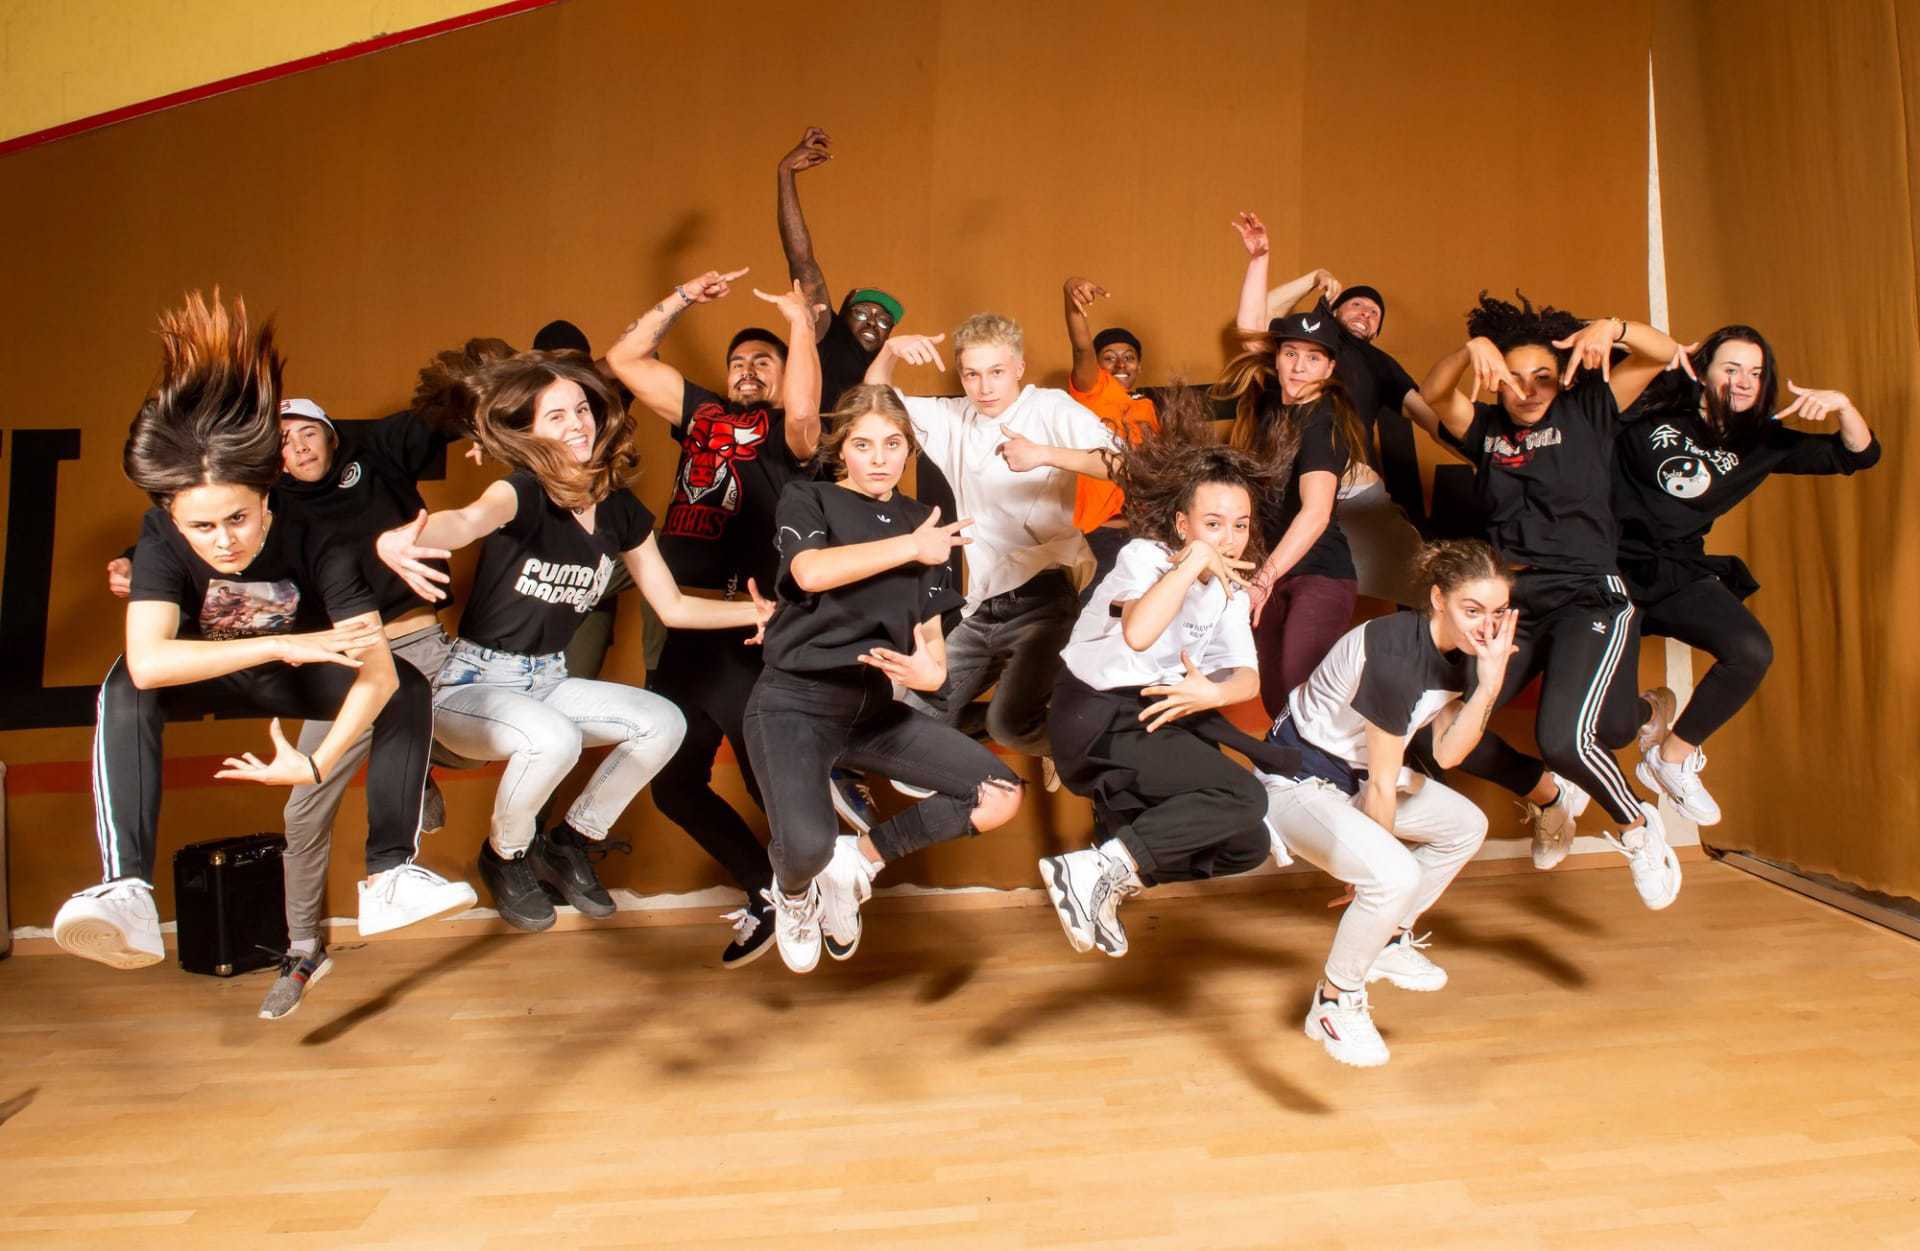 Des battles de krump, danse née dans les années 2000 dans les quartiers pauvres de Los Angeles, sont prévues samedi soir.